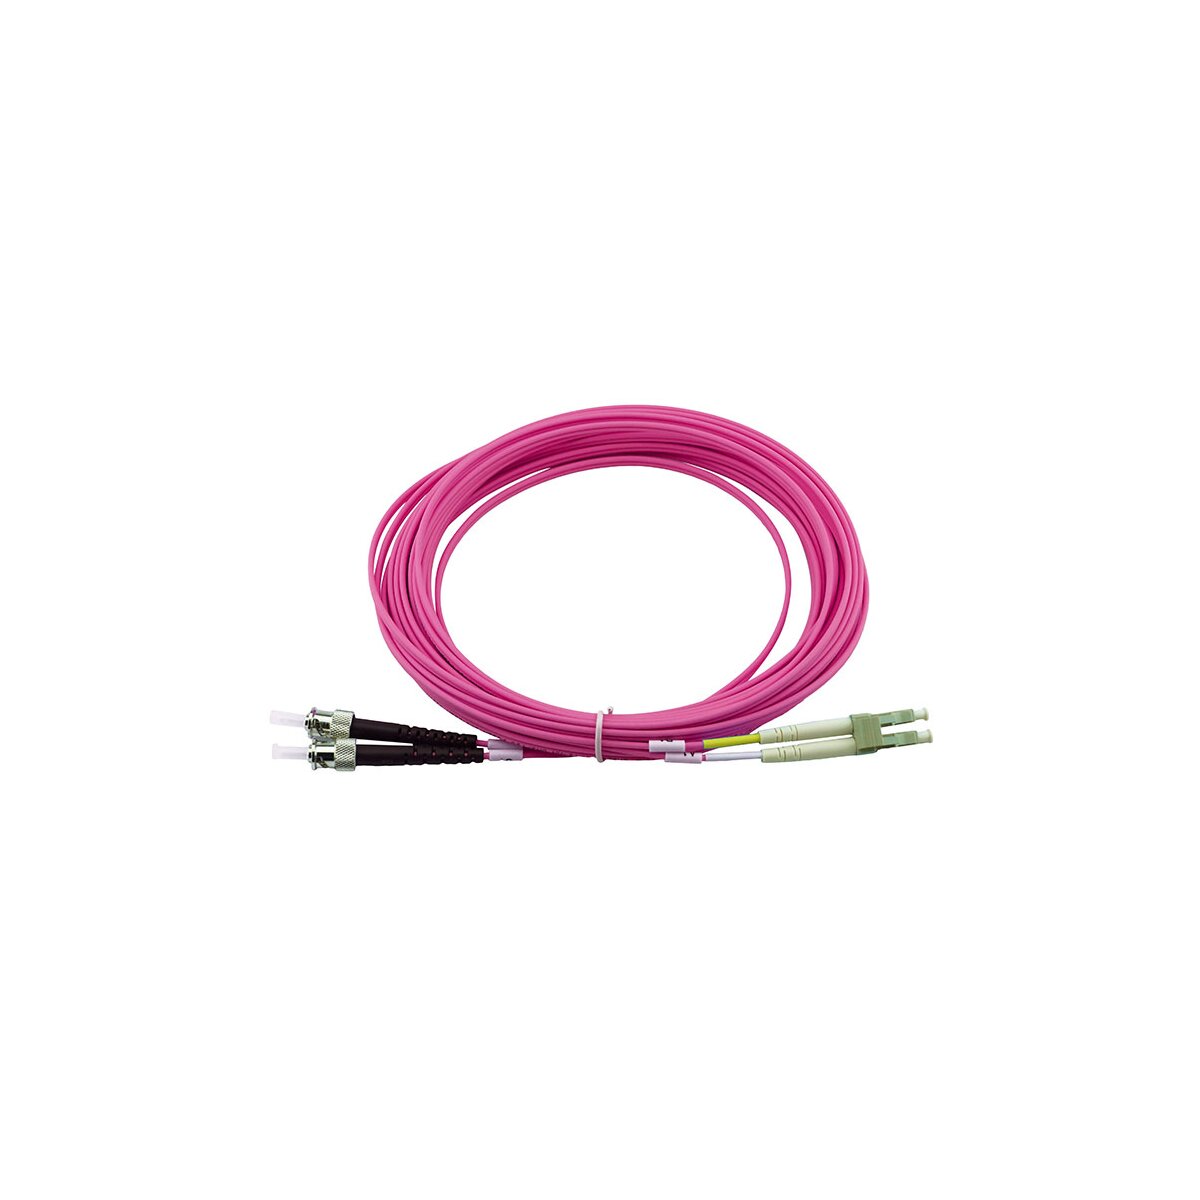 Kabel & im IT Sie kaufen günstig Online OCTO24 Shop Adapter